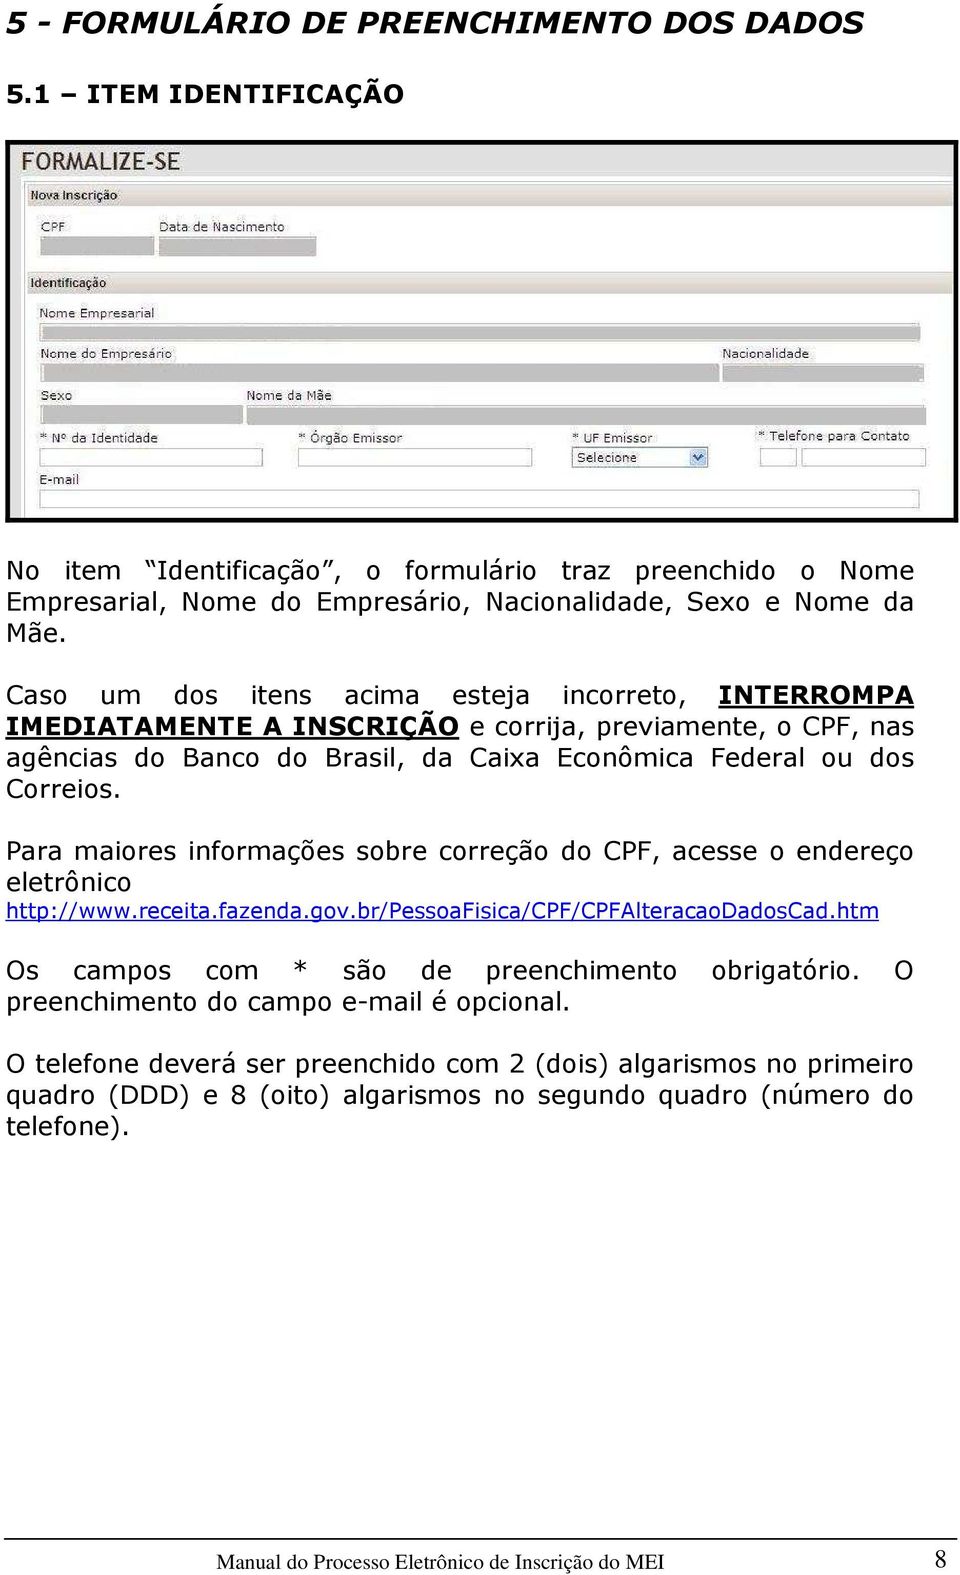 Para maiores informações sobre correção do CPF, acesse o endereço eletrônico http://www.receita.fazenda.gov.br/pessoafisica/cpf/cpfalteracaodadoscad.